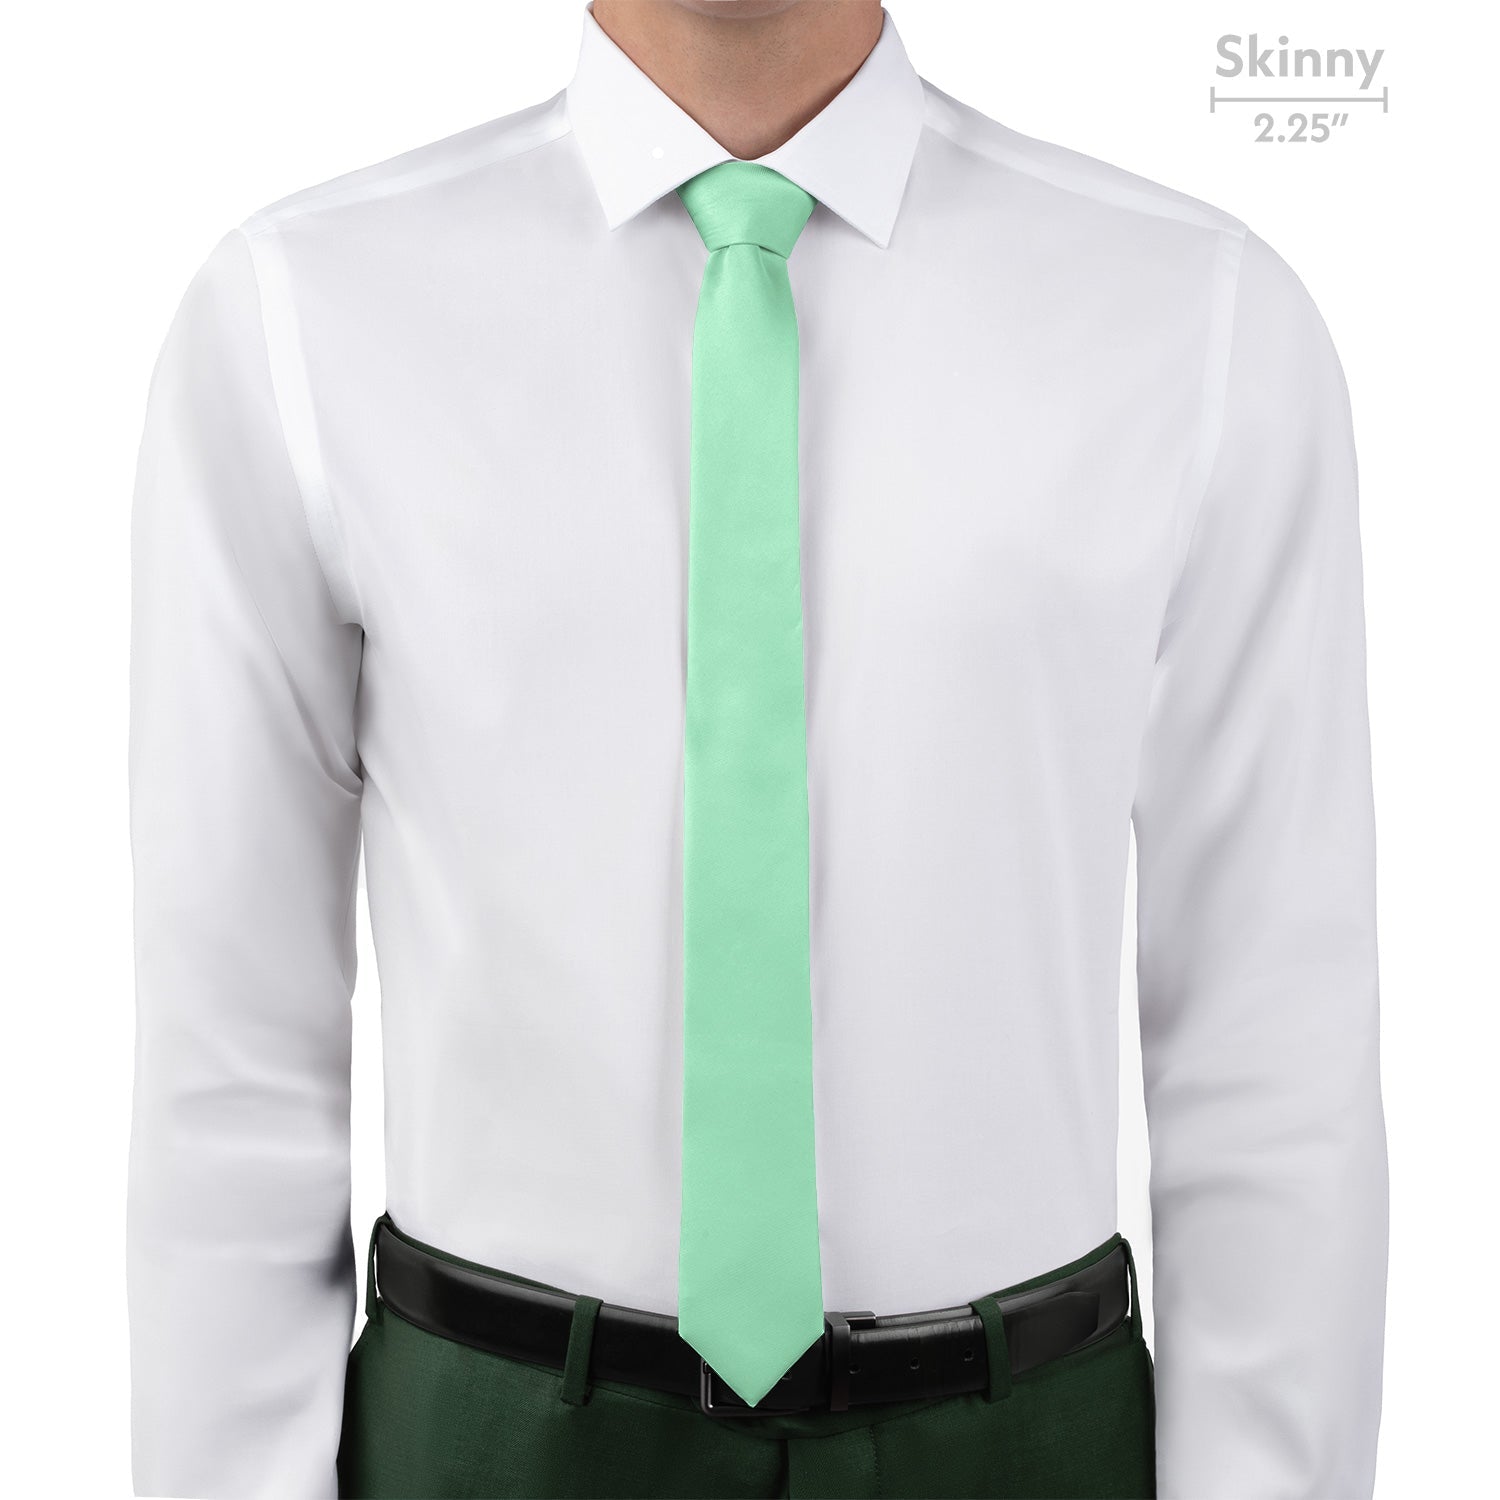 Azazie Malibu Necktie - Skinny - Knotty Tie Co.